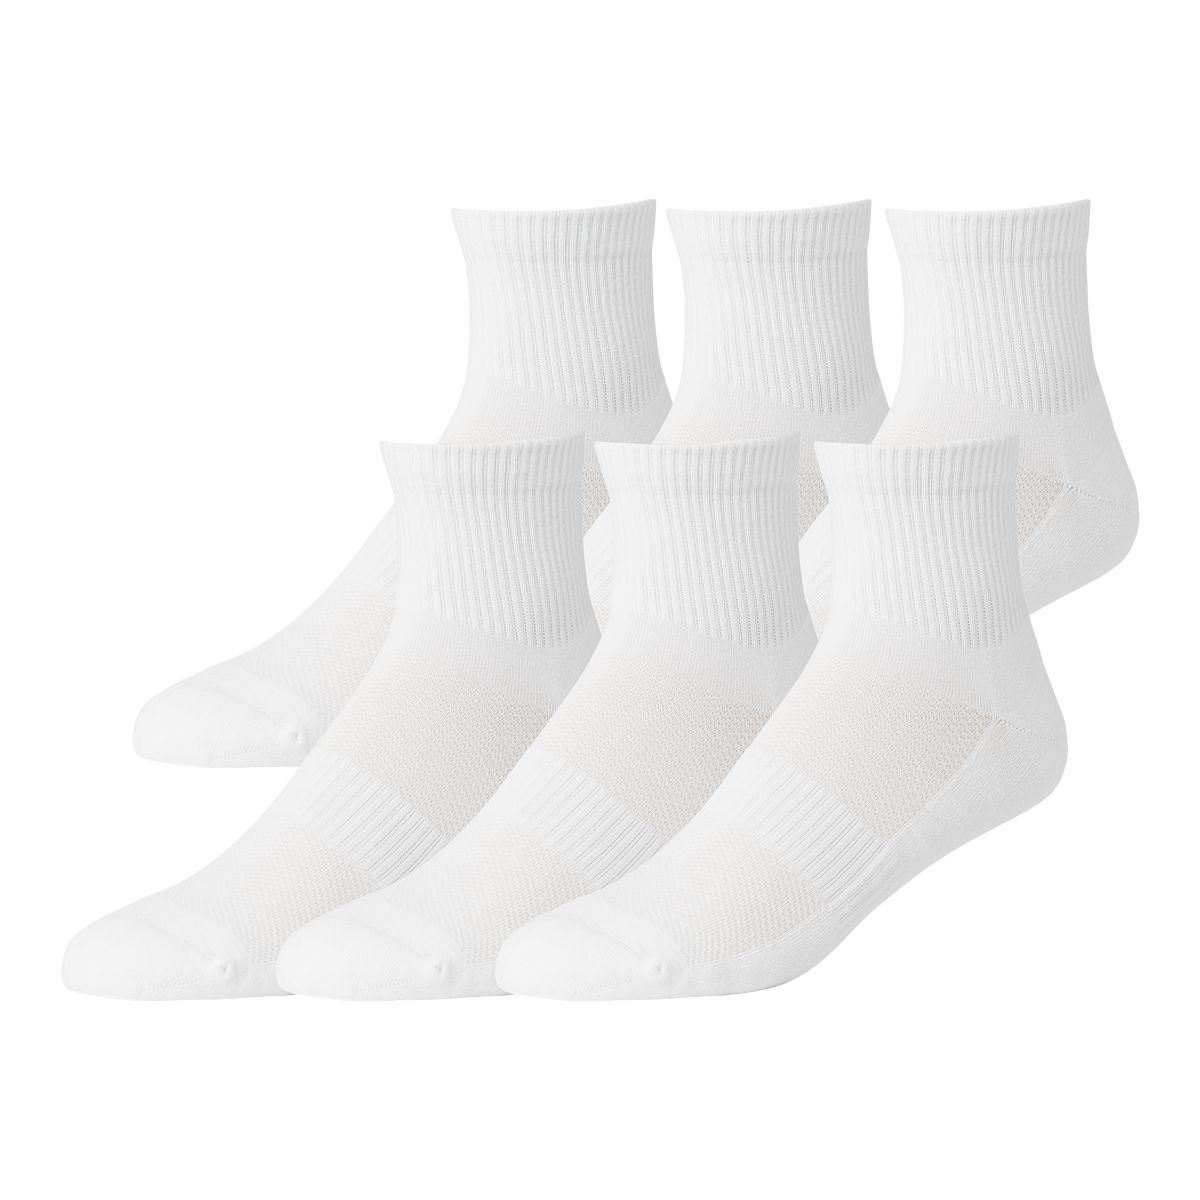 FWD Men's Mesh Quarter Socks - 6 Pack